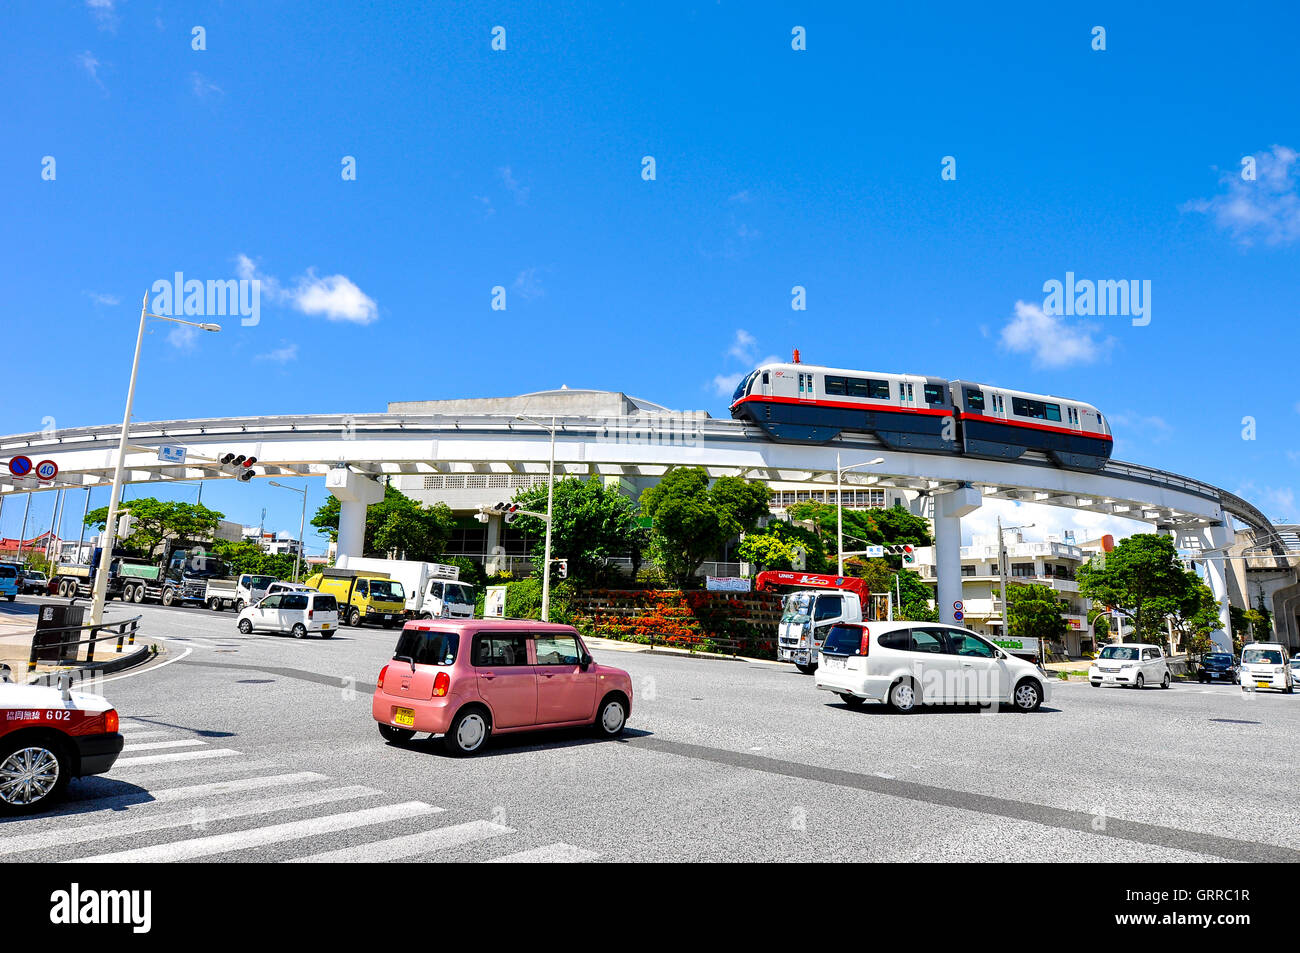 Okinawa (Monorail) Yui-Rail est un seul transport ferroviaire dans la ville de Naha, Okinawa, Japon. Prises dans la région de Shuri, Juillet 22, 2016 Banque D'Images